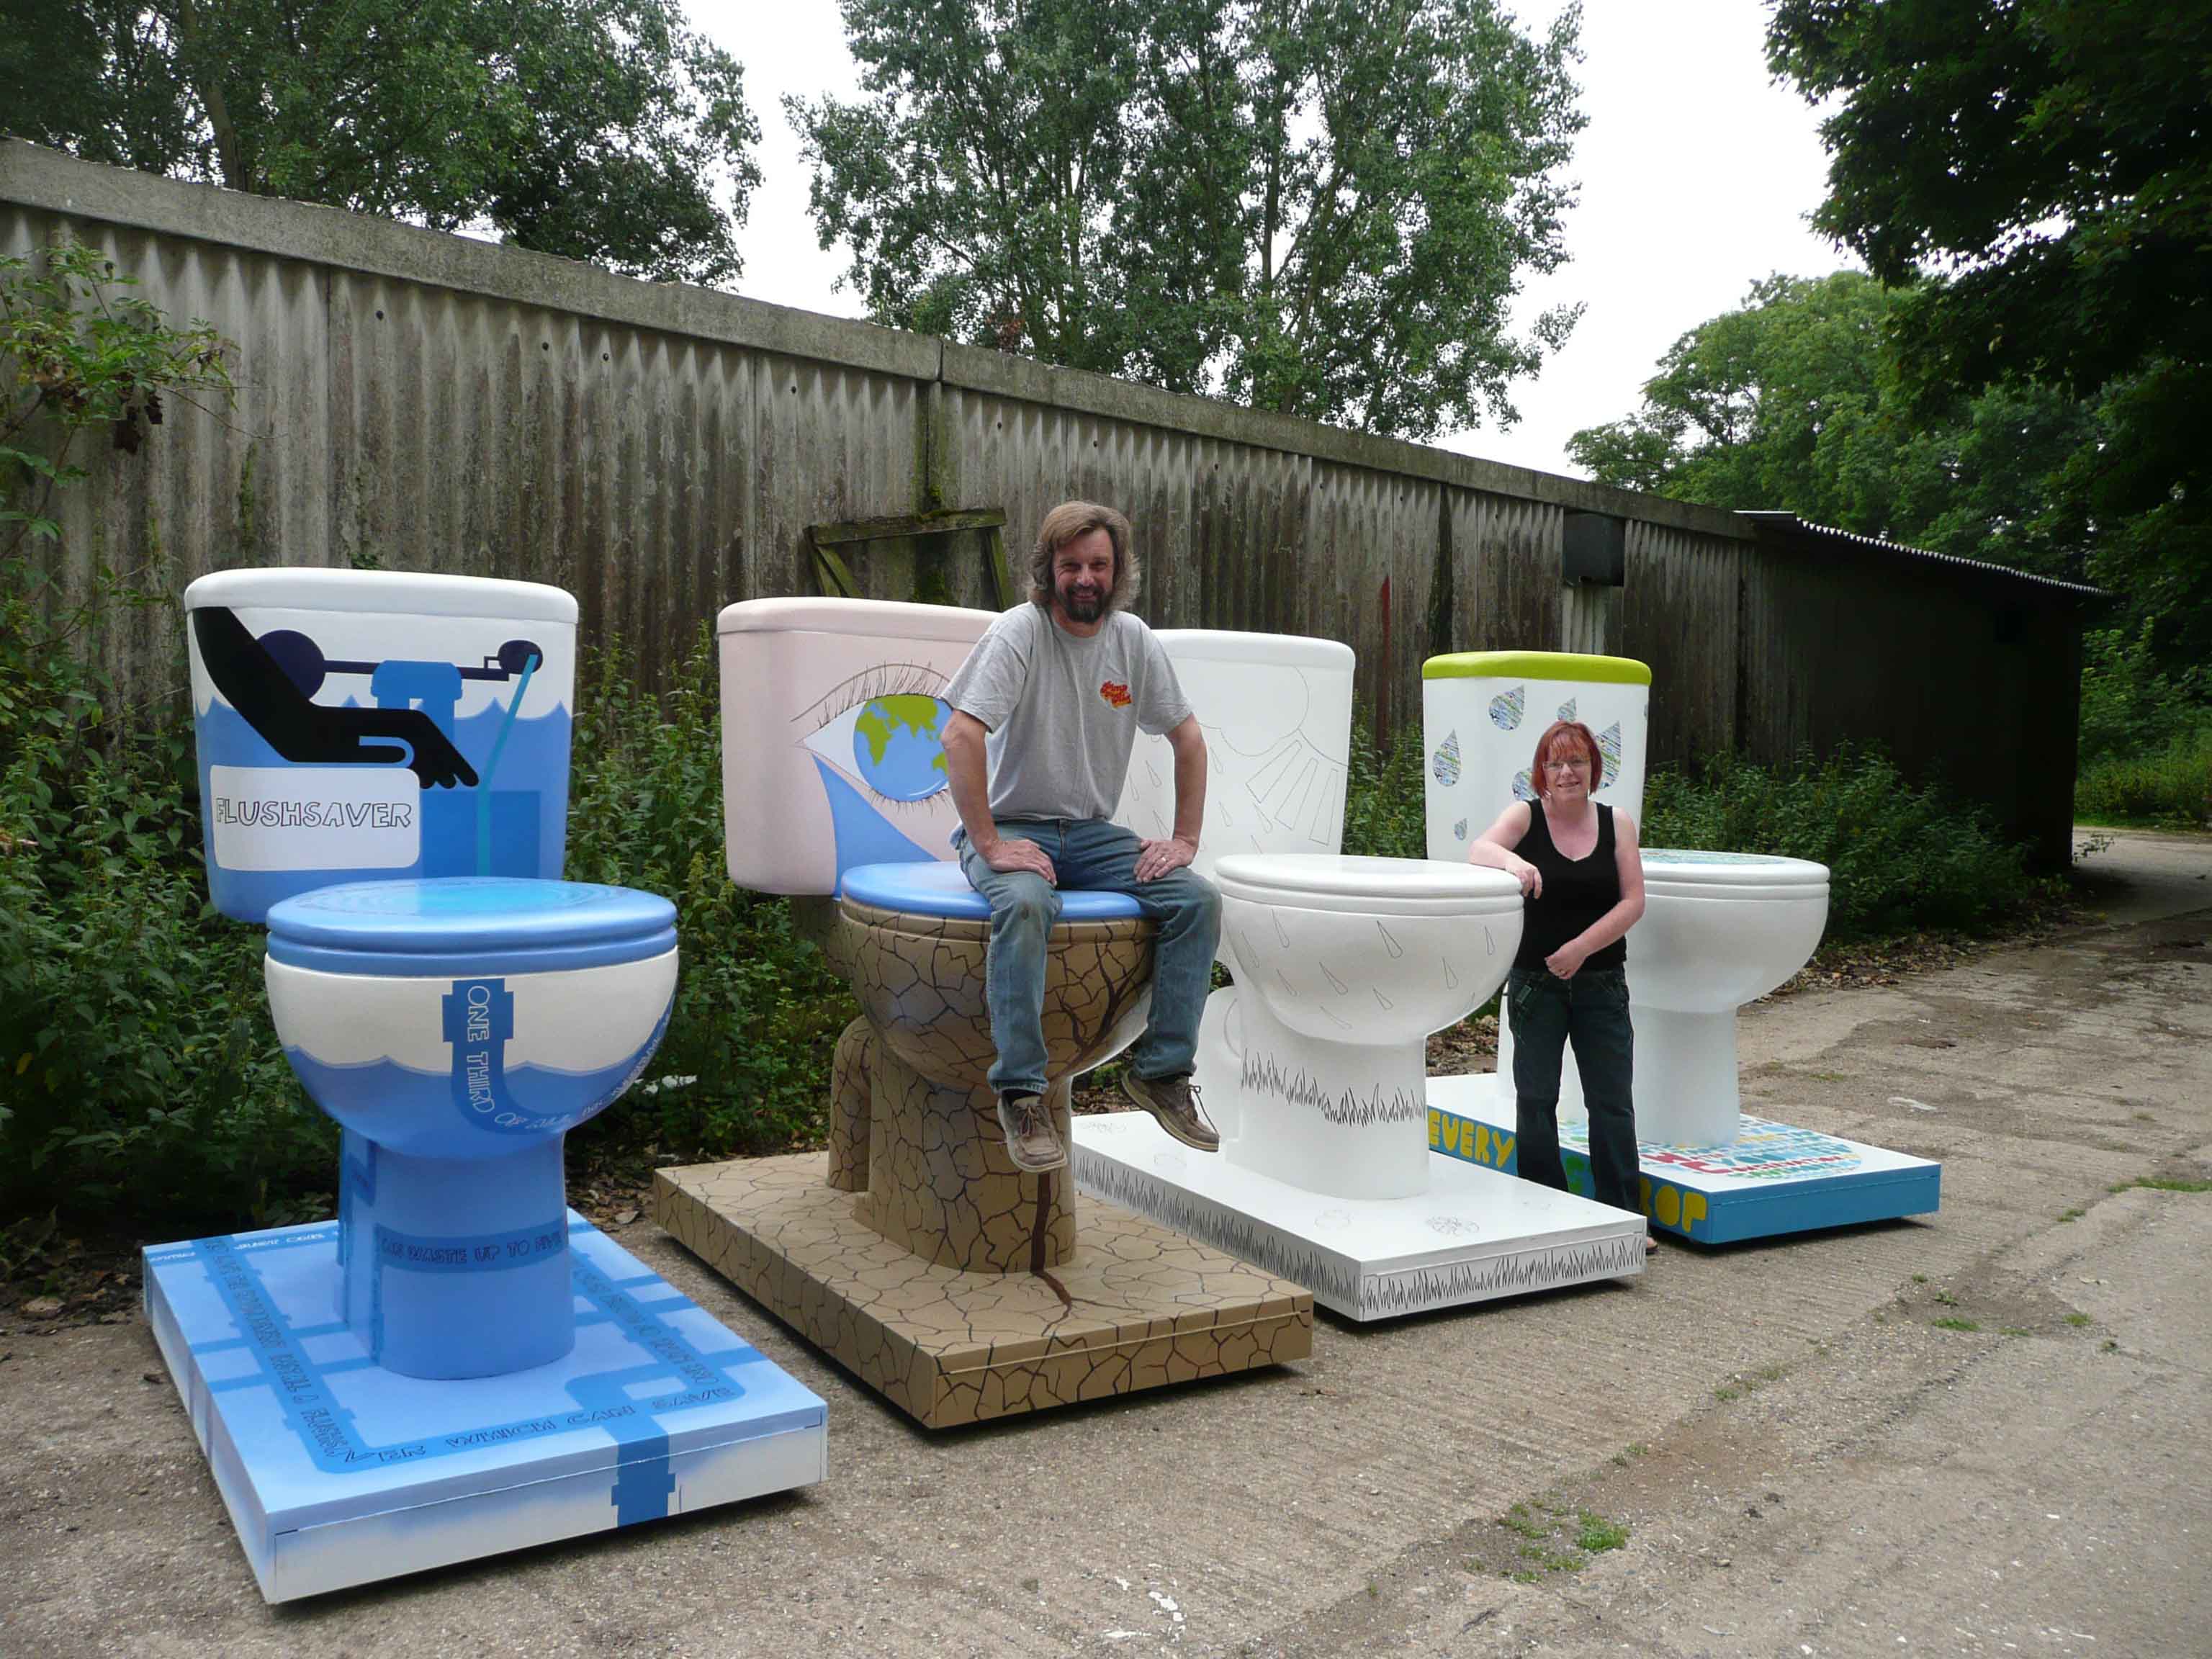 Giant fibreglass toilets